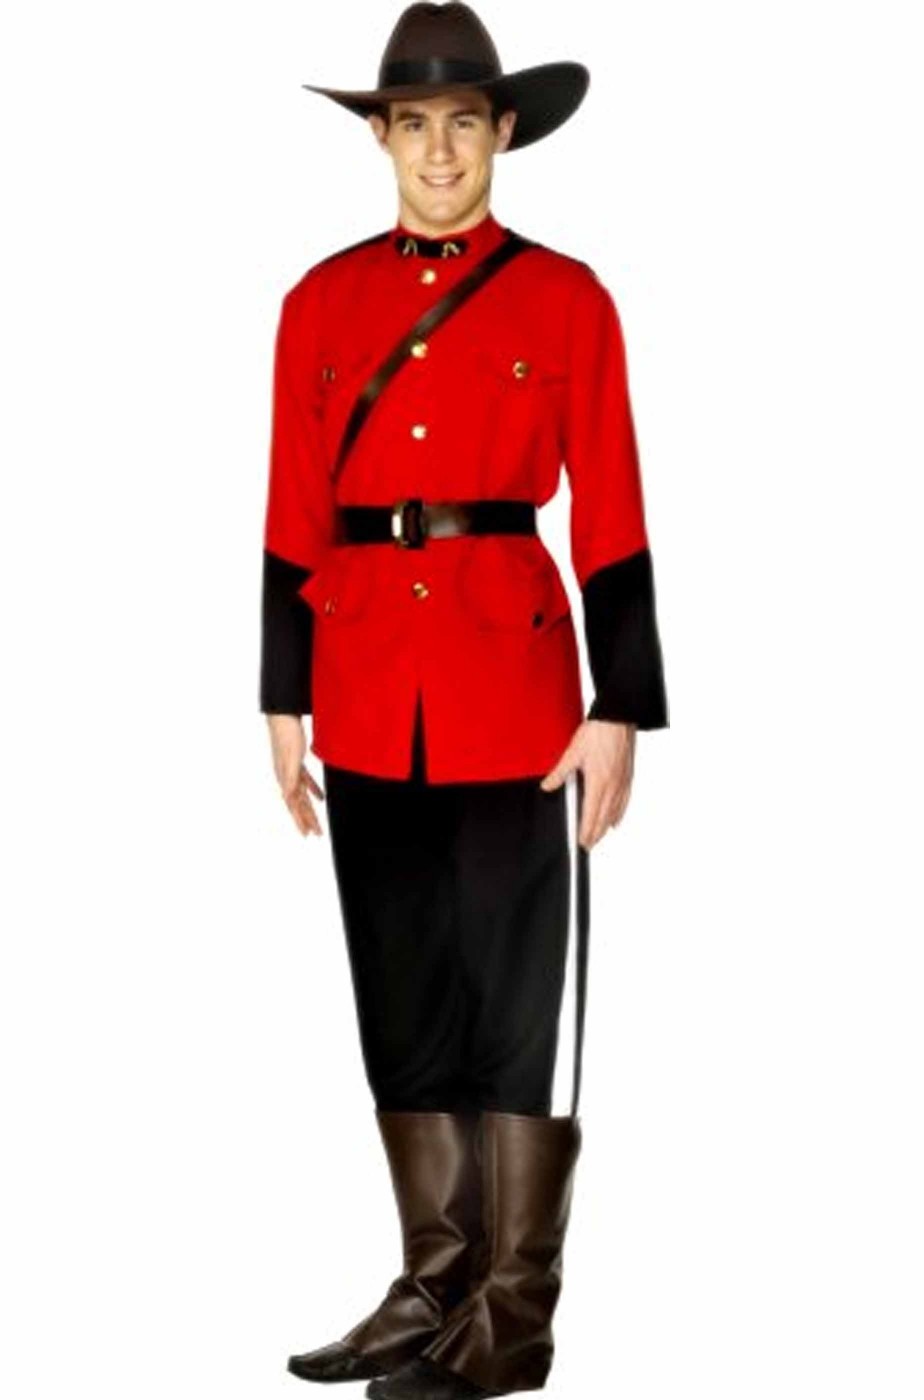 Vestito di carnevale uomo uniforme giubba rossa canadese